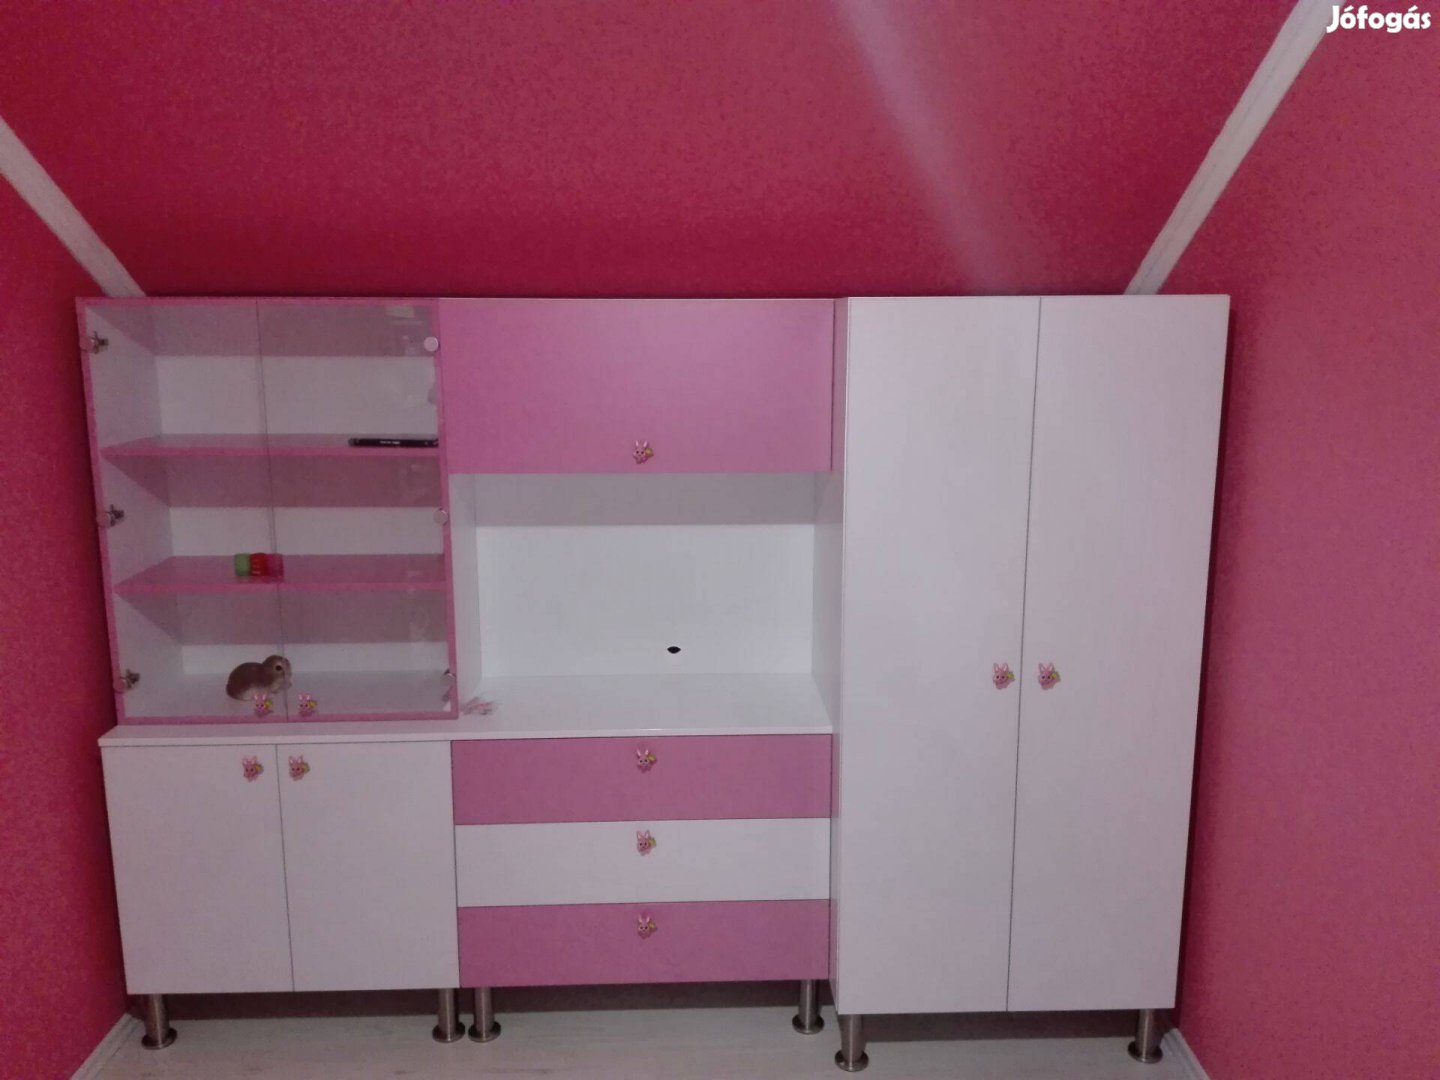 Kislány gyerek szobabútor, szekrénysor